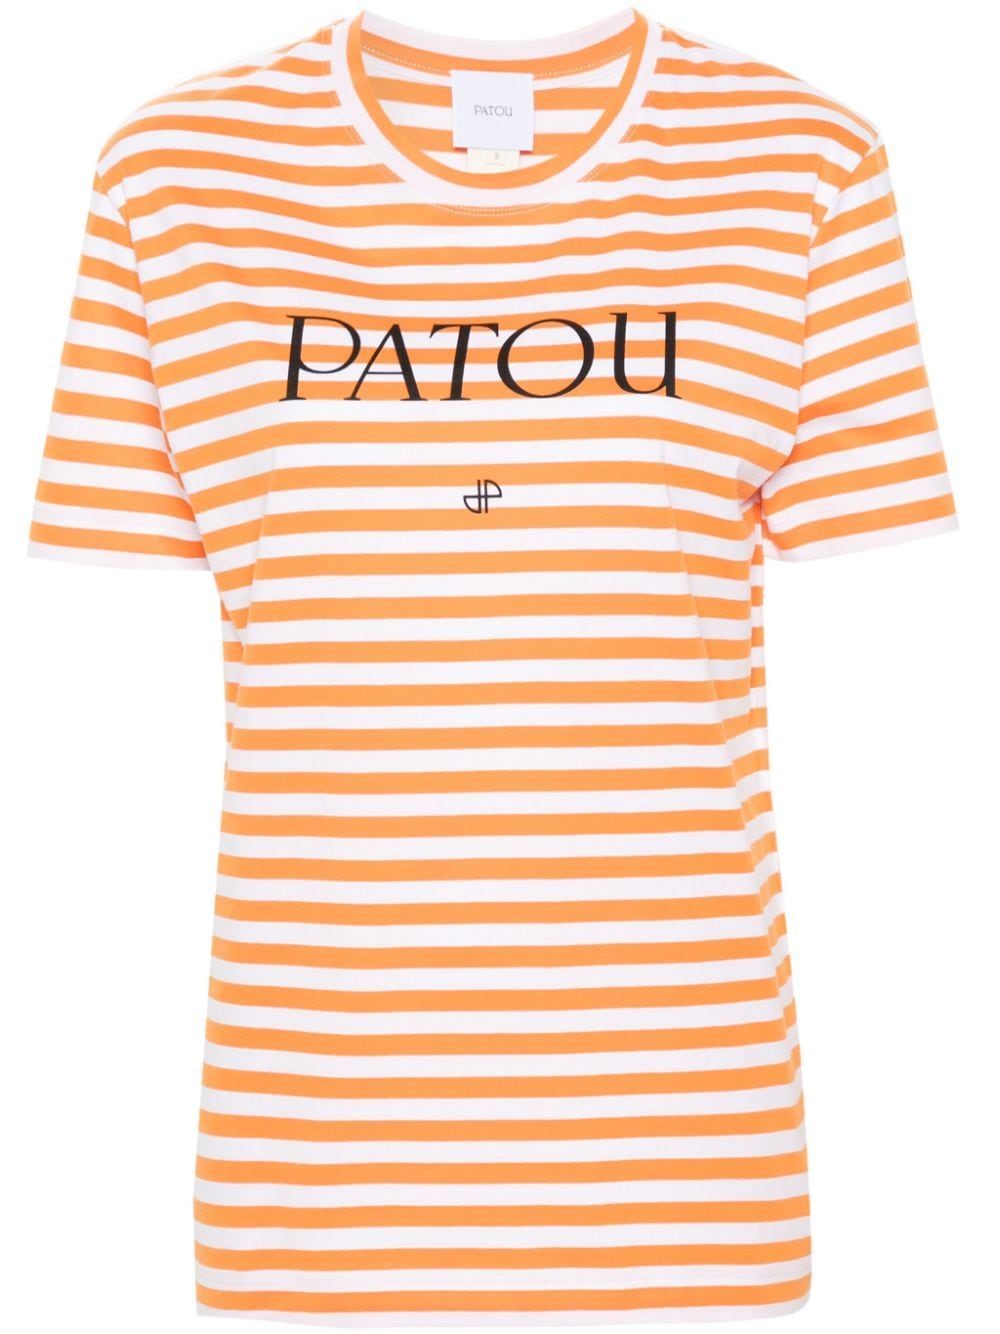 patou t-shirt rayé à logo imprimé - orange